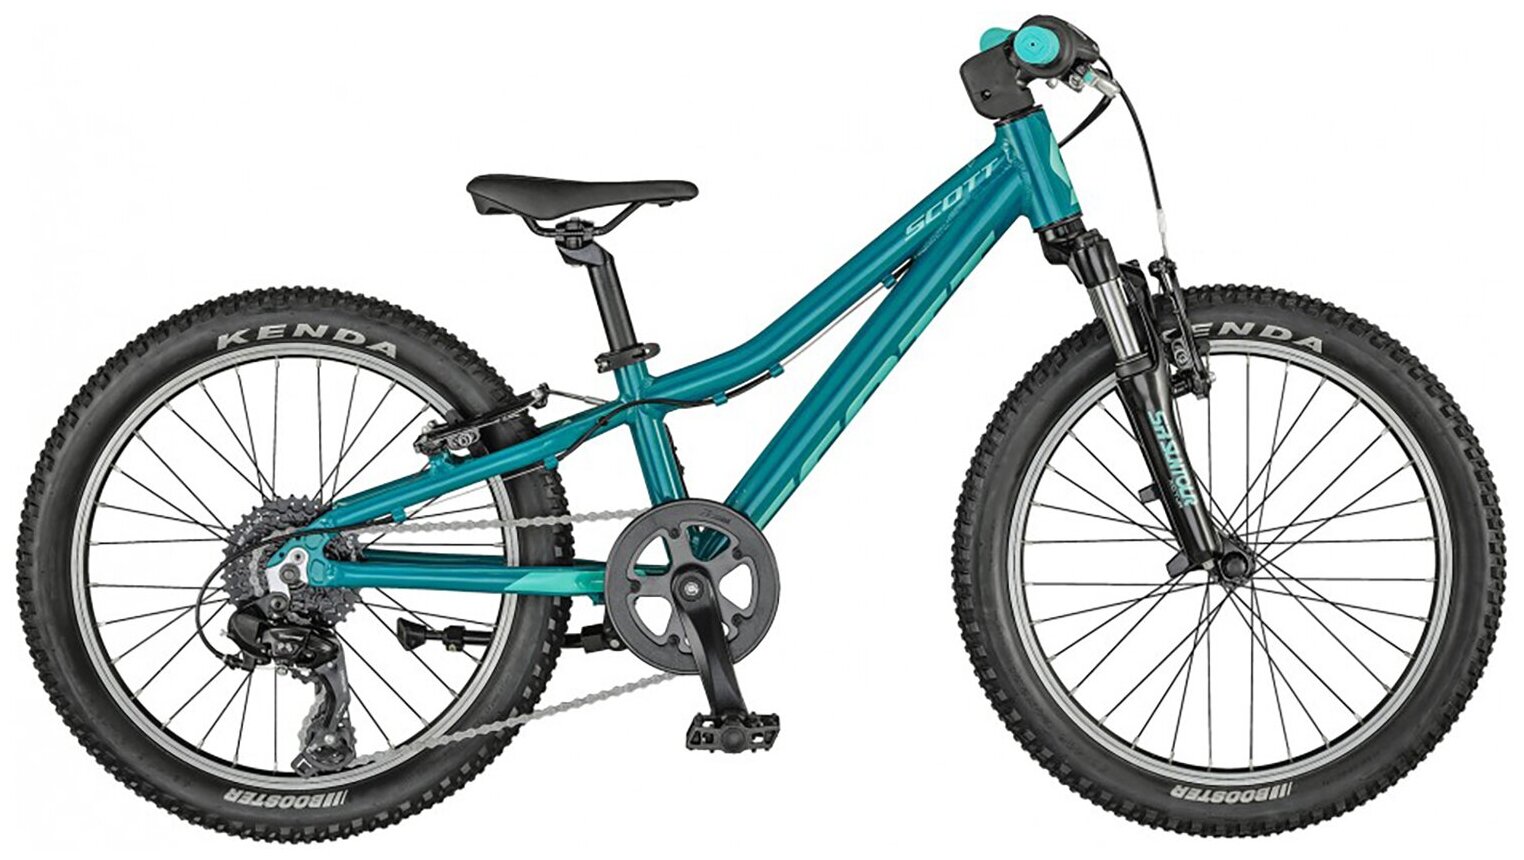 Велосипед Scott Contessa 20 (2021) (One size)